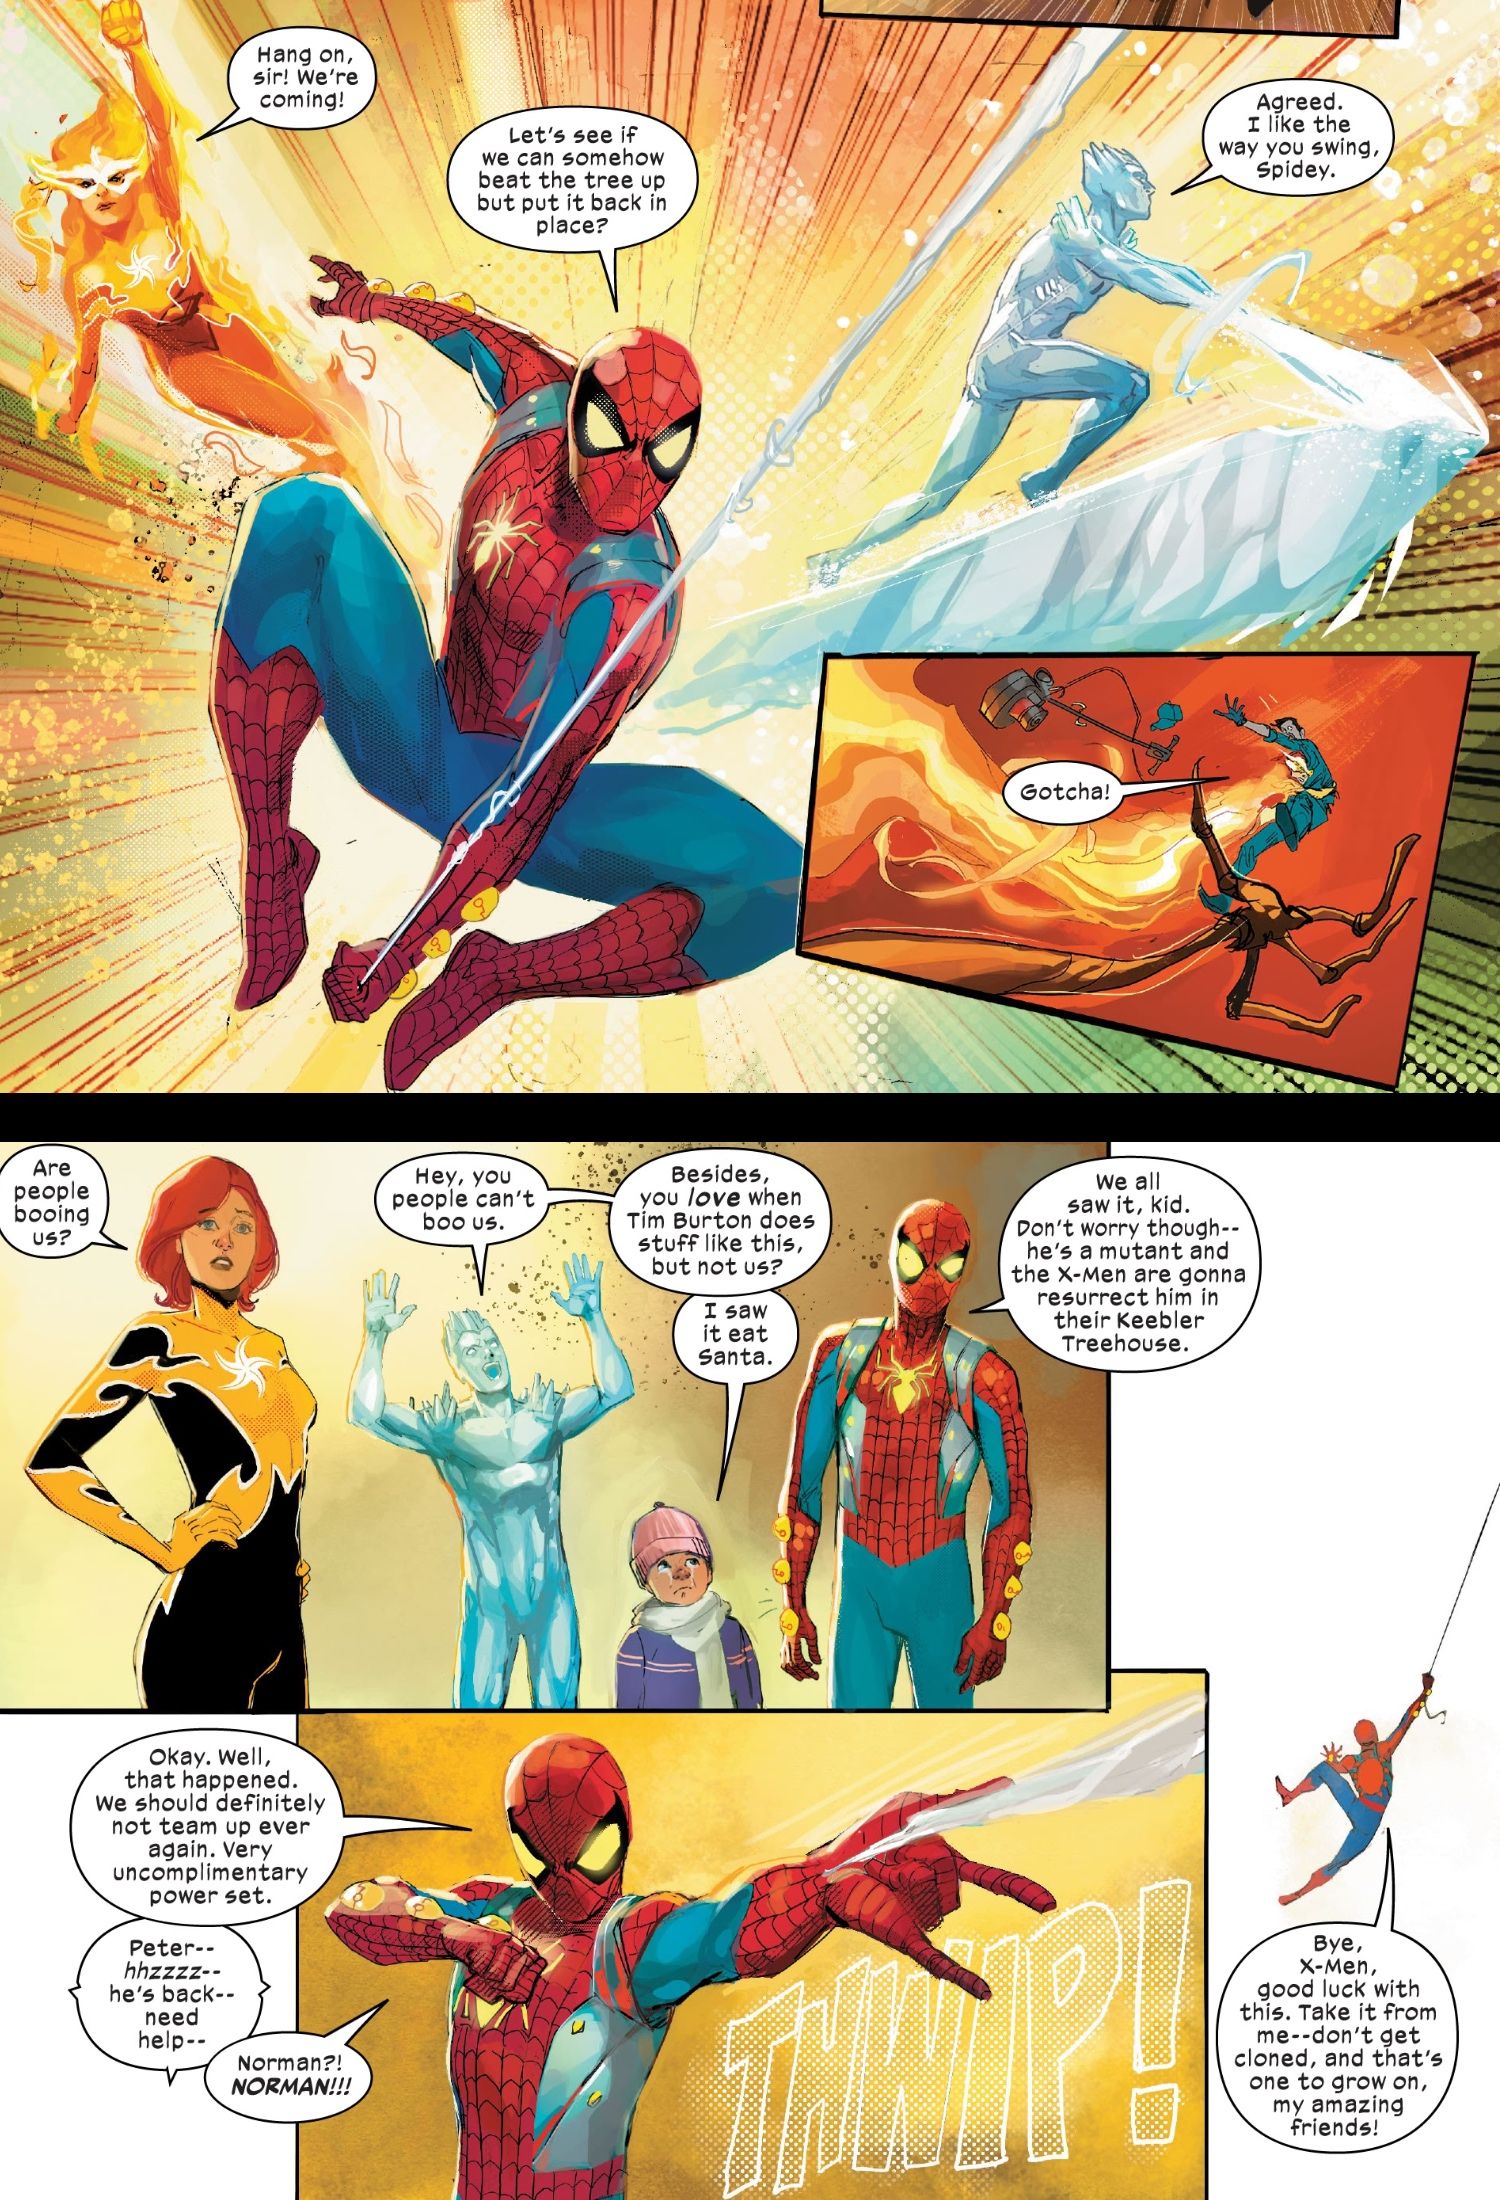 Spider-Man et ses incroyables amis s'unissent dans Dark Web